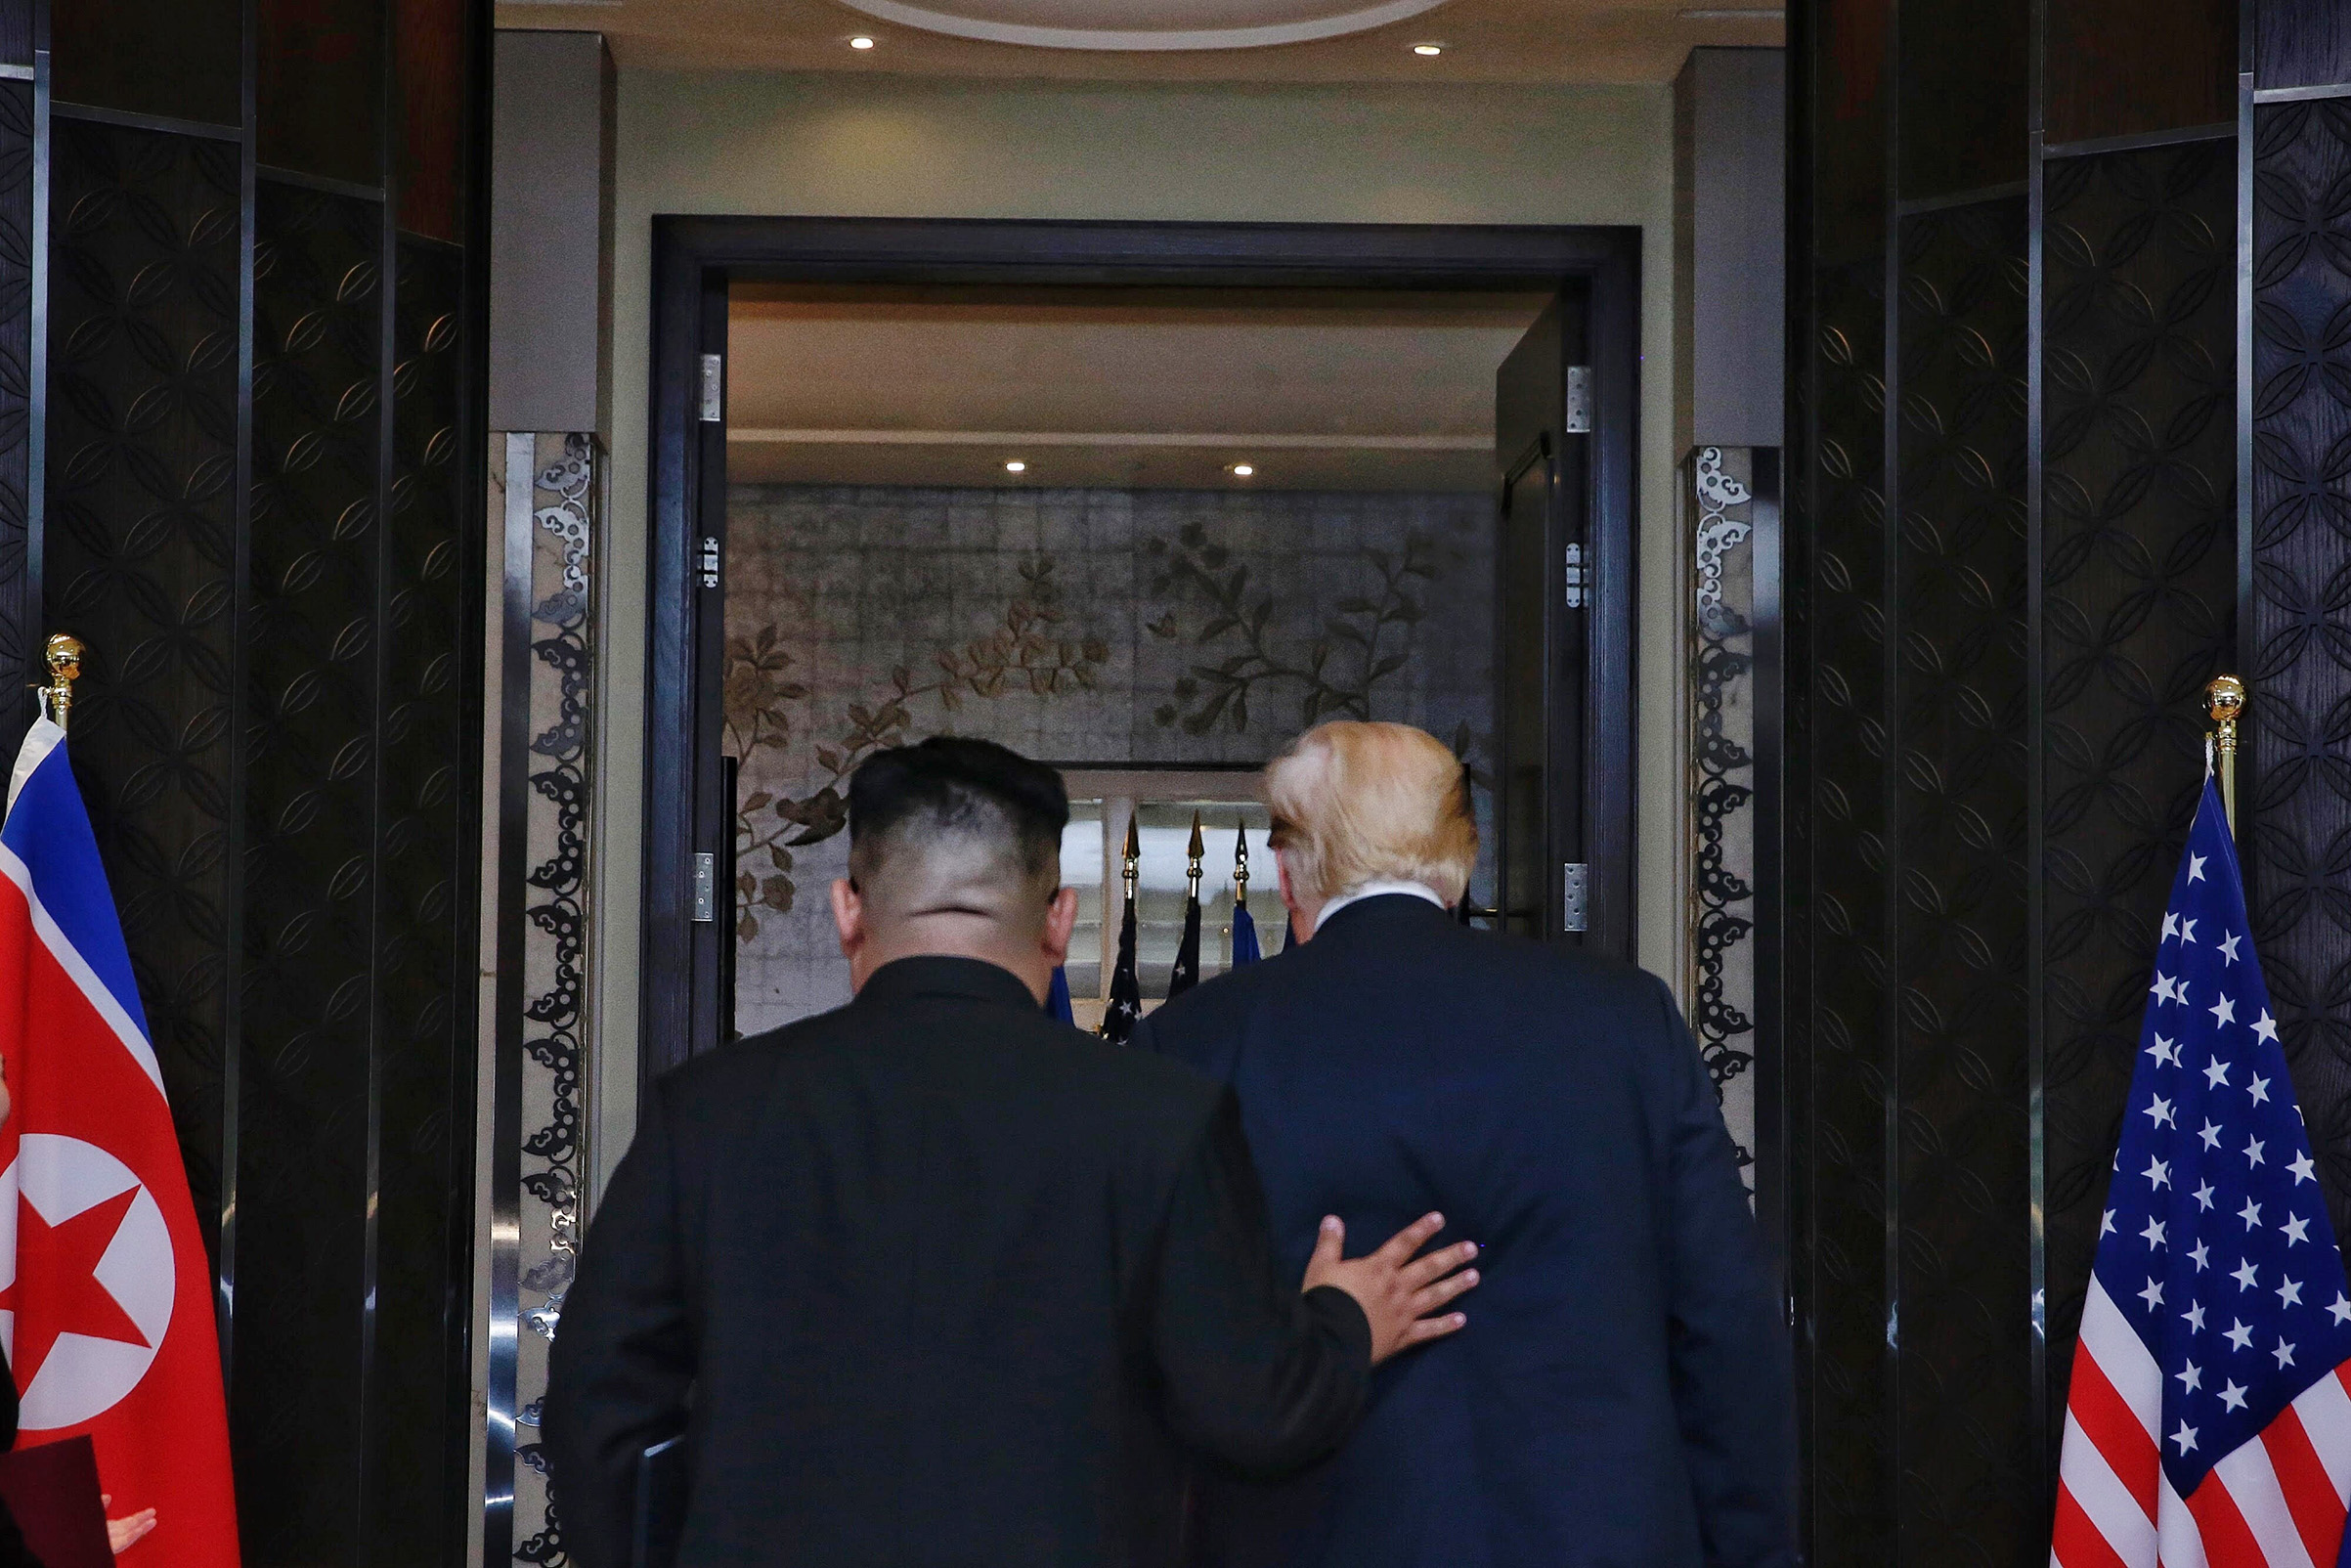 Kim Trump depart signing at Singapore Summit